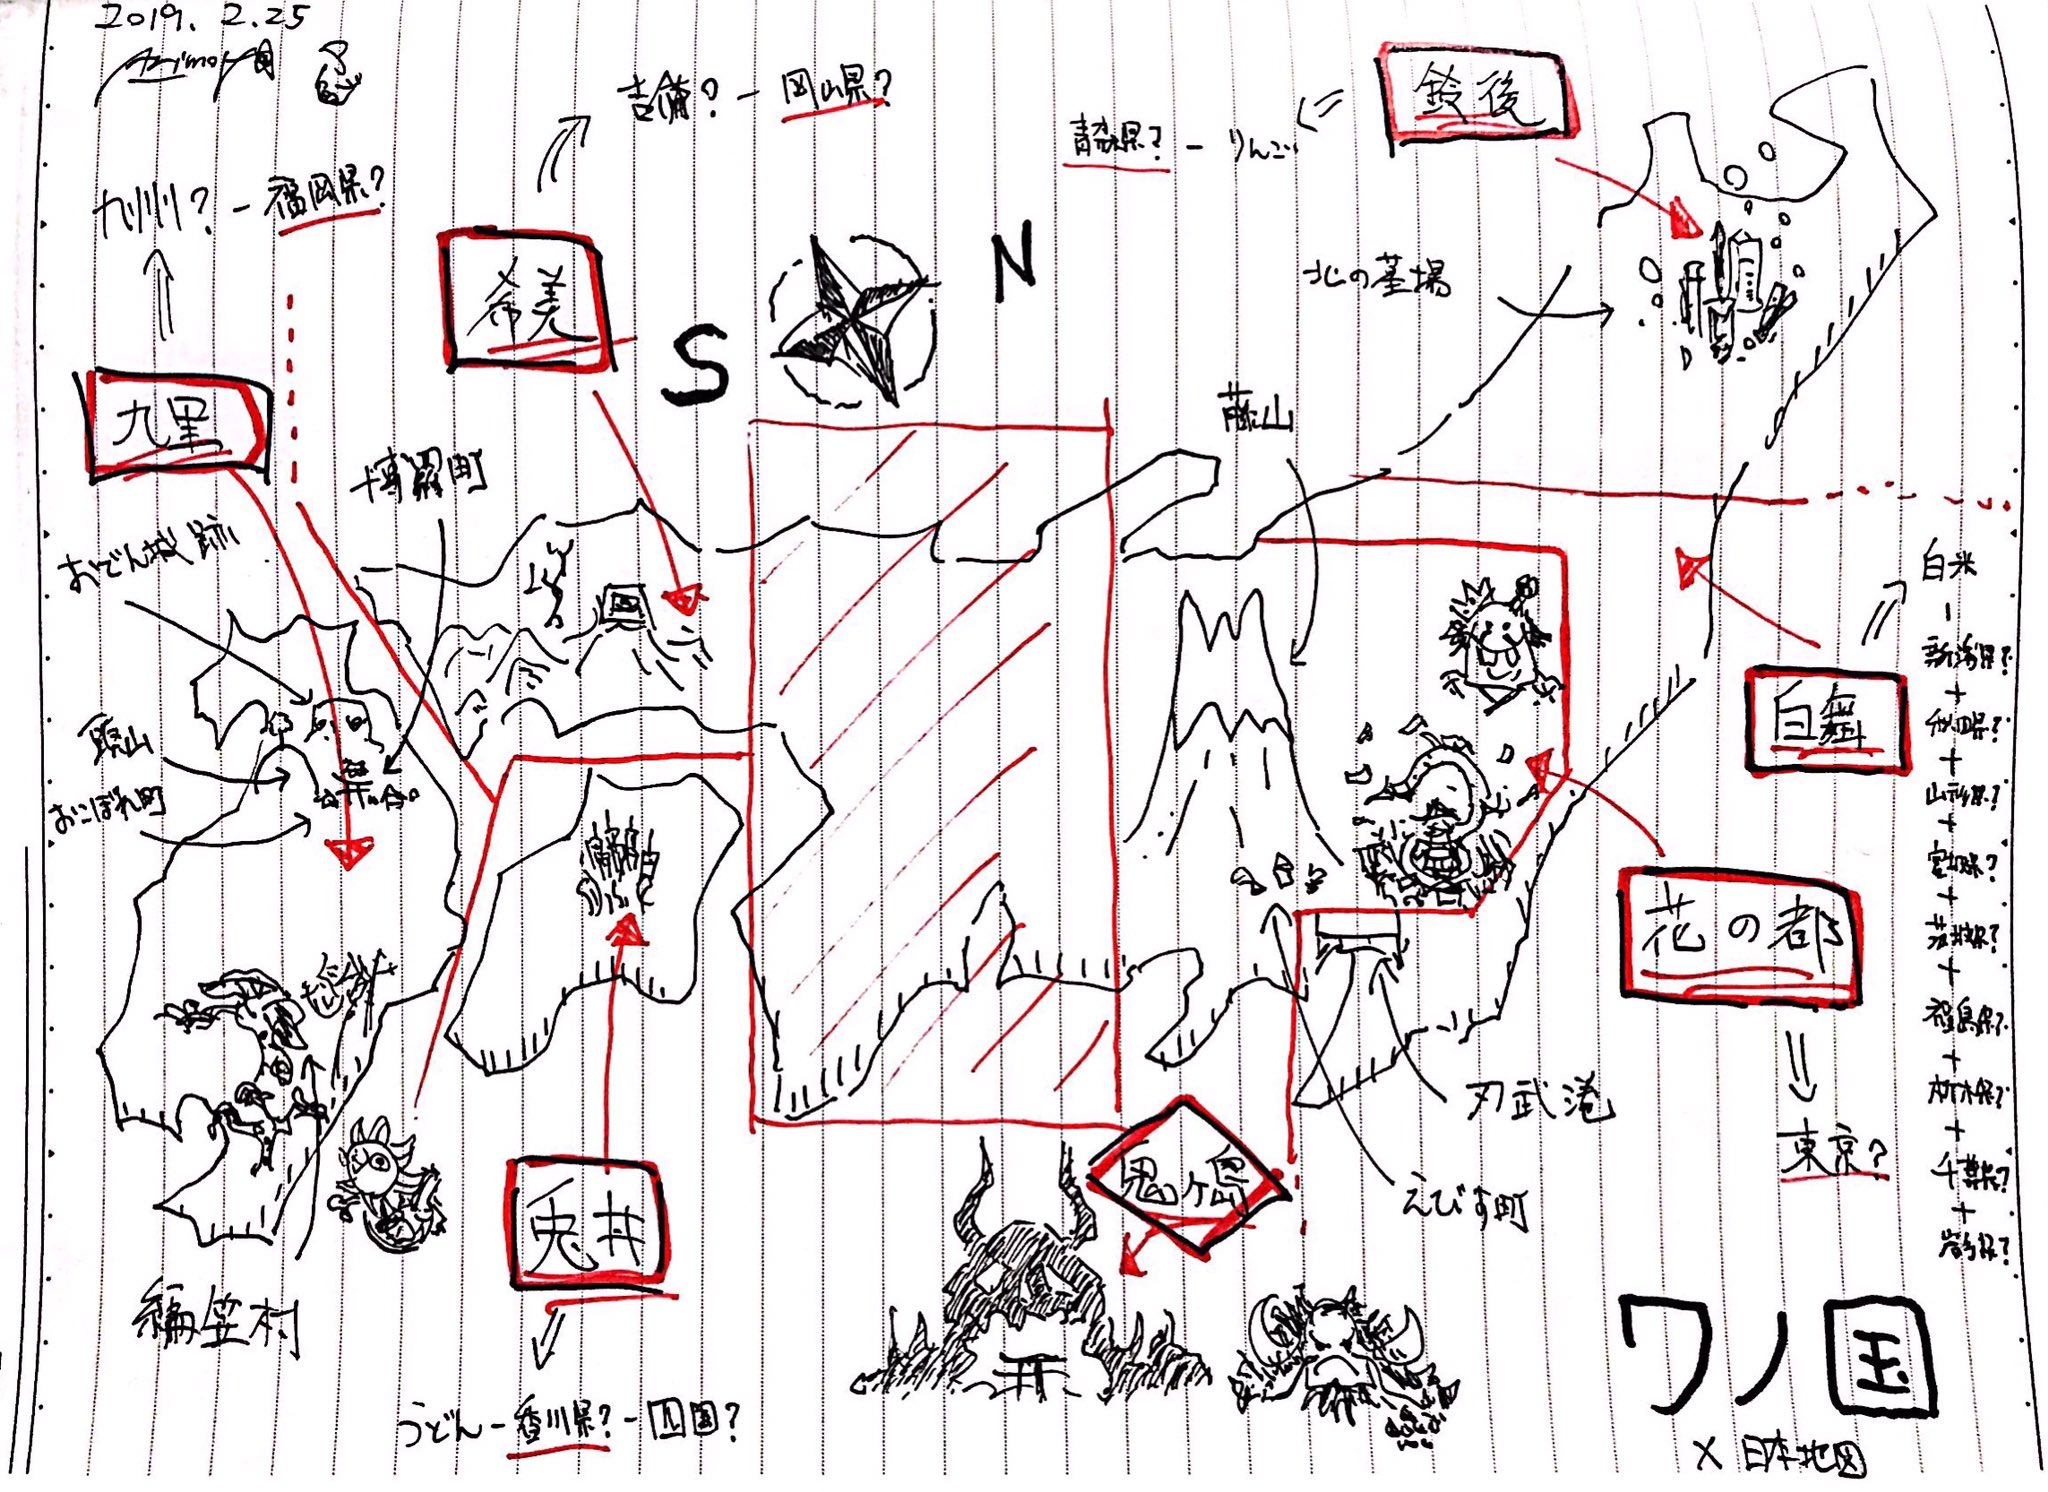 ポーネグリフのarimo 7 3silverjubilee One Piece 934話 ワノ国の地図が判明したので六つの郷の地名と位置を覚えるために日本地図と照らし合わせ 京都麦わら道中で扱われた ヨウ という都は端折られてる幻の郷 近畿にあるのかな 北海道と沖縄書け